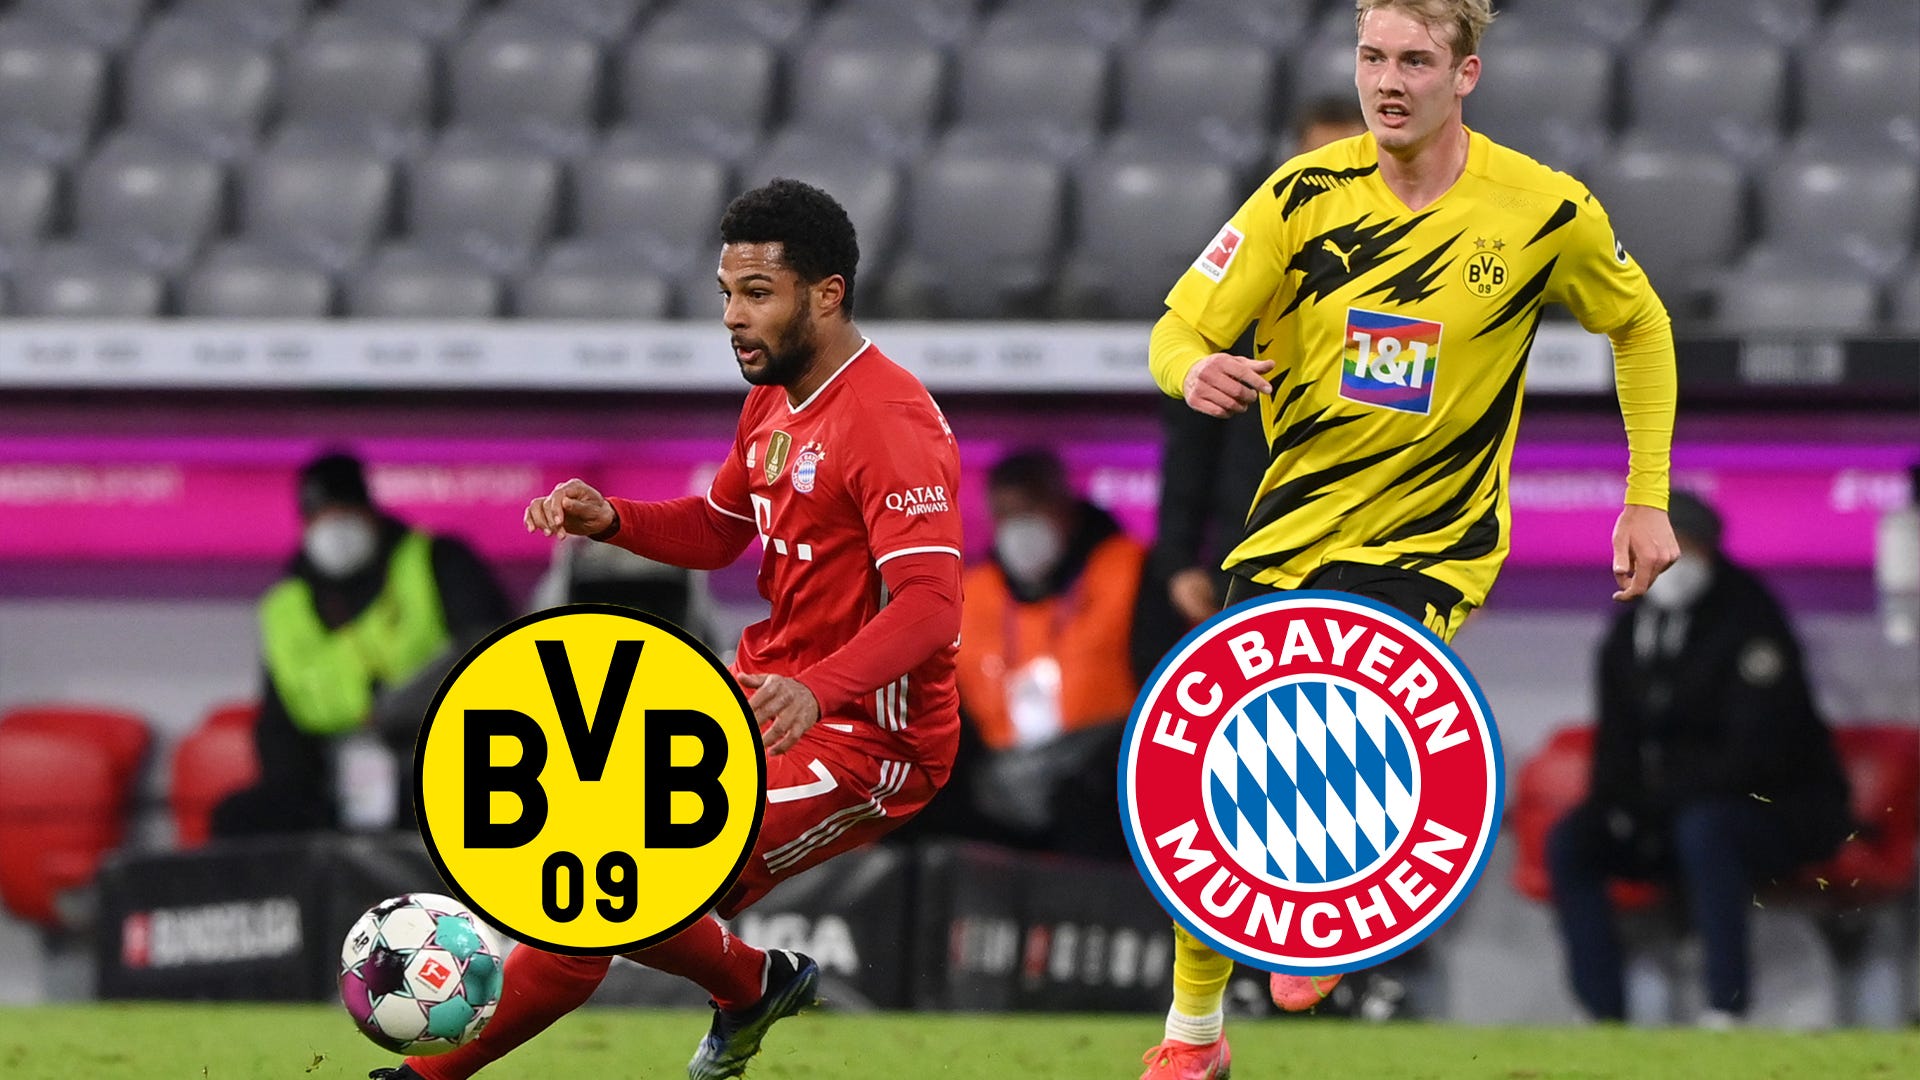 Bayern München Programm & Aufstellung Supercup 2017 Borussia Dortmund 